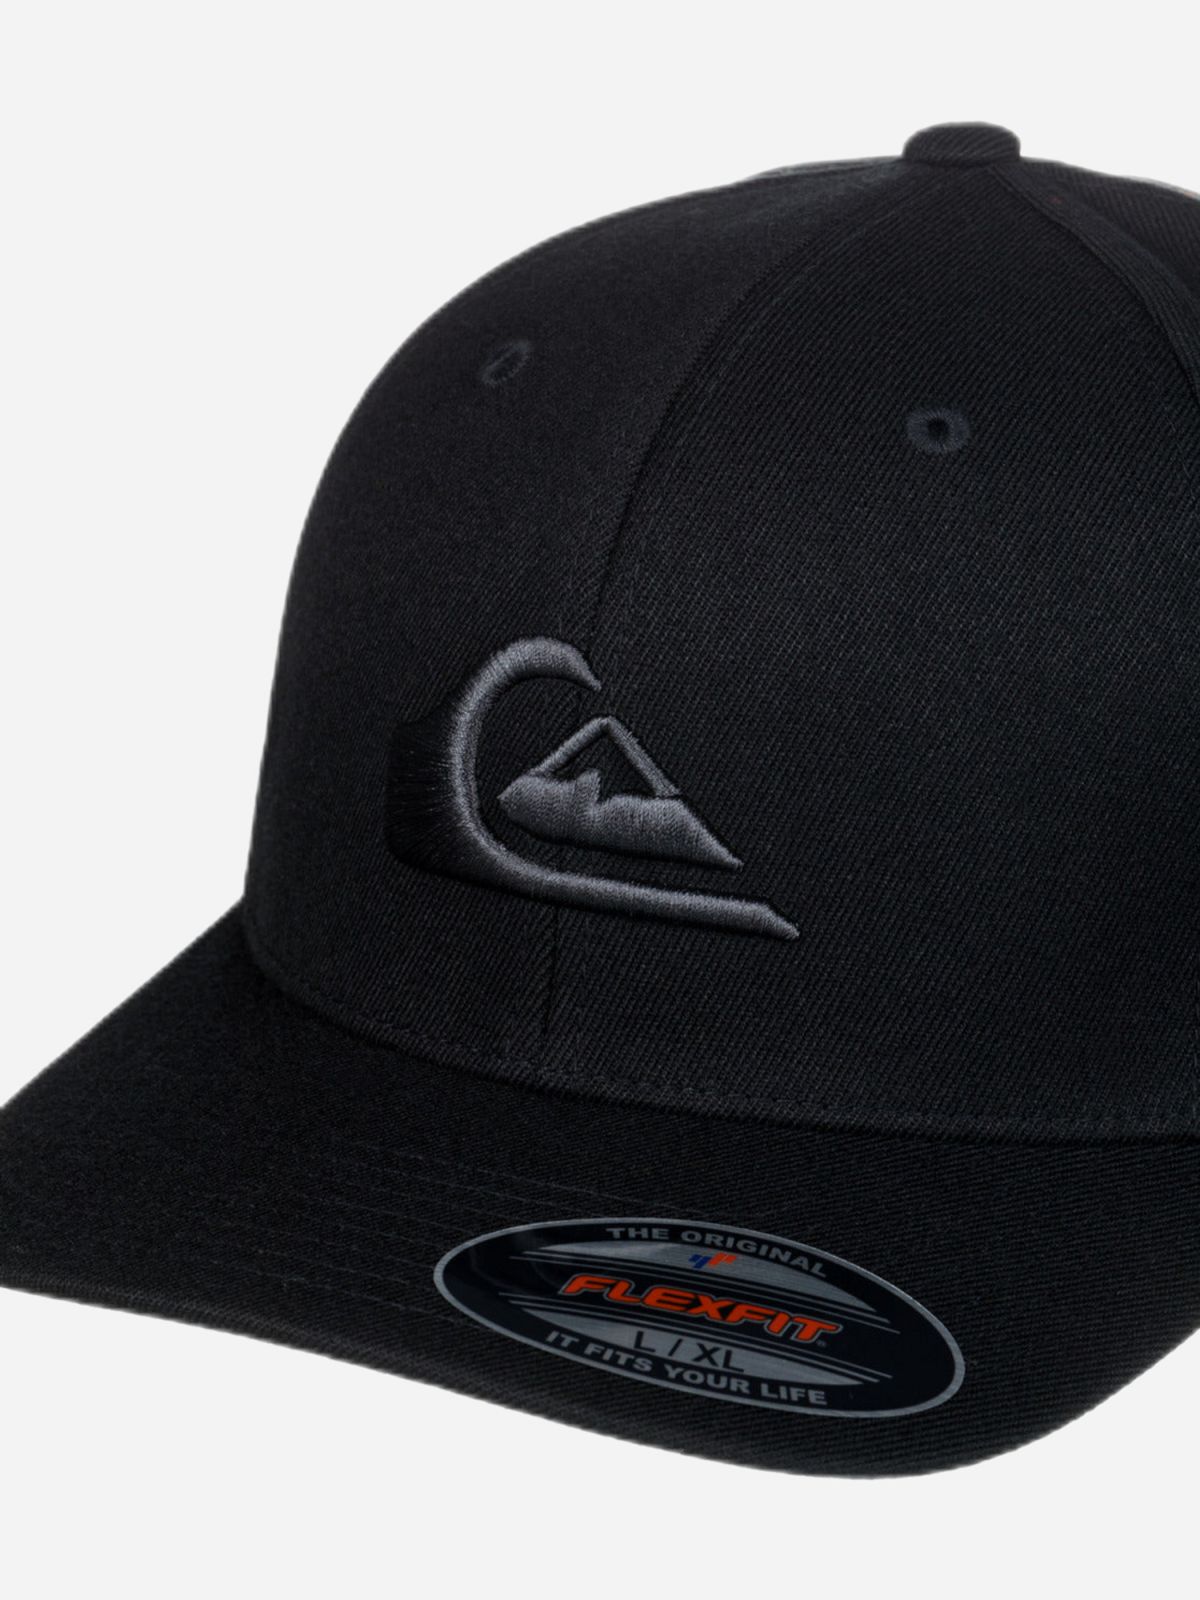  כובע מצחייה עם לוגו של QUIKSILVER